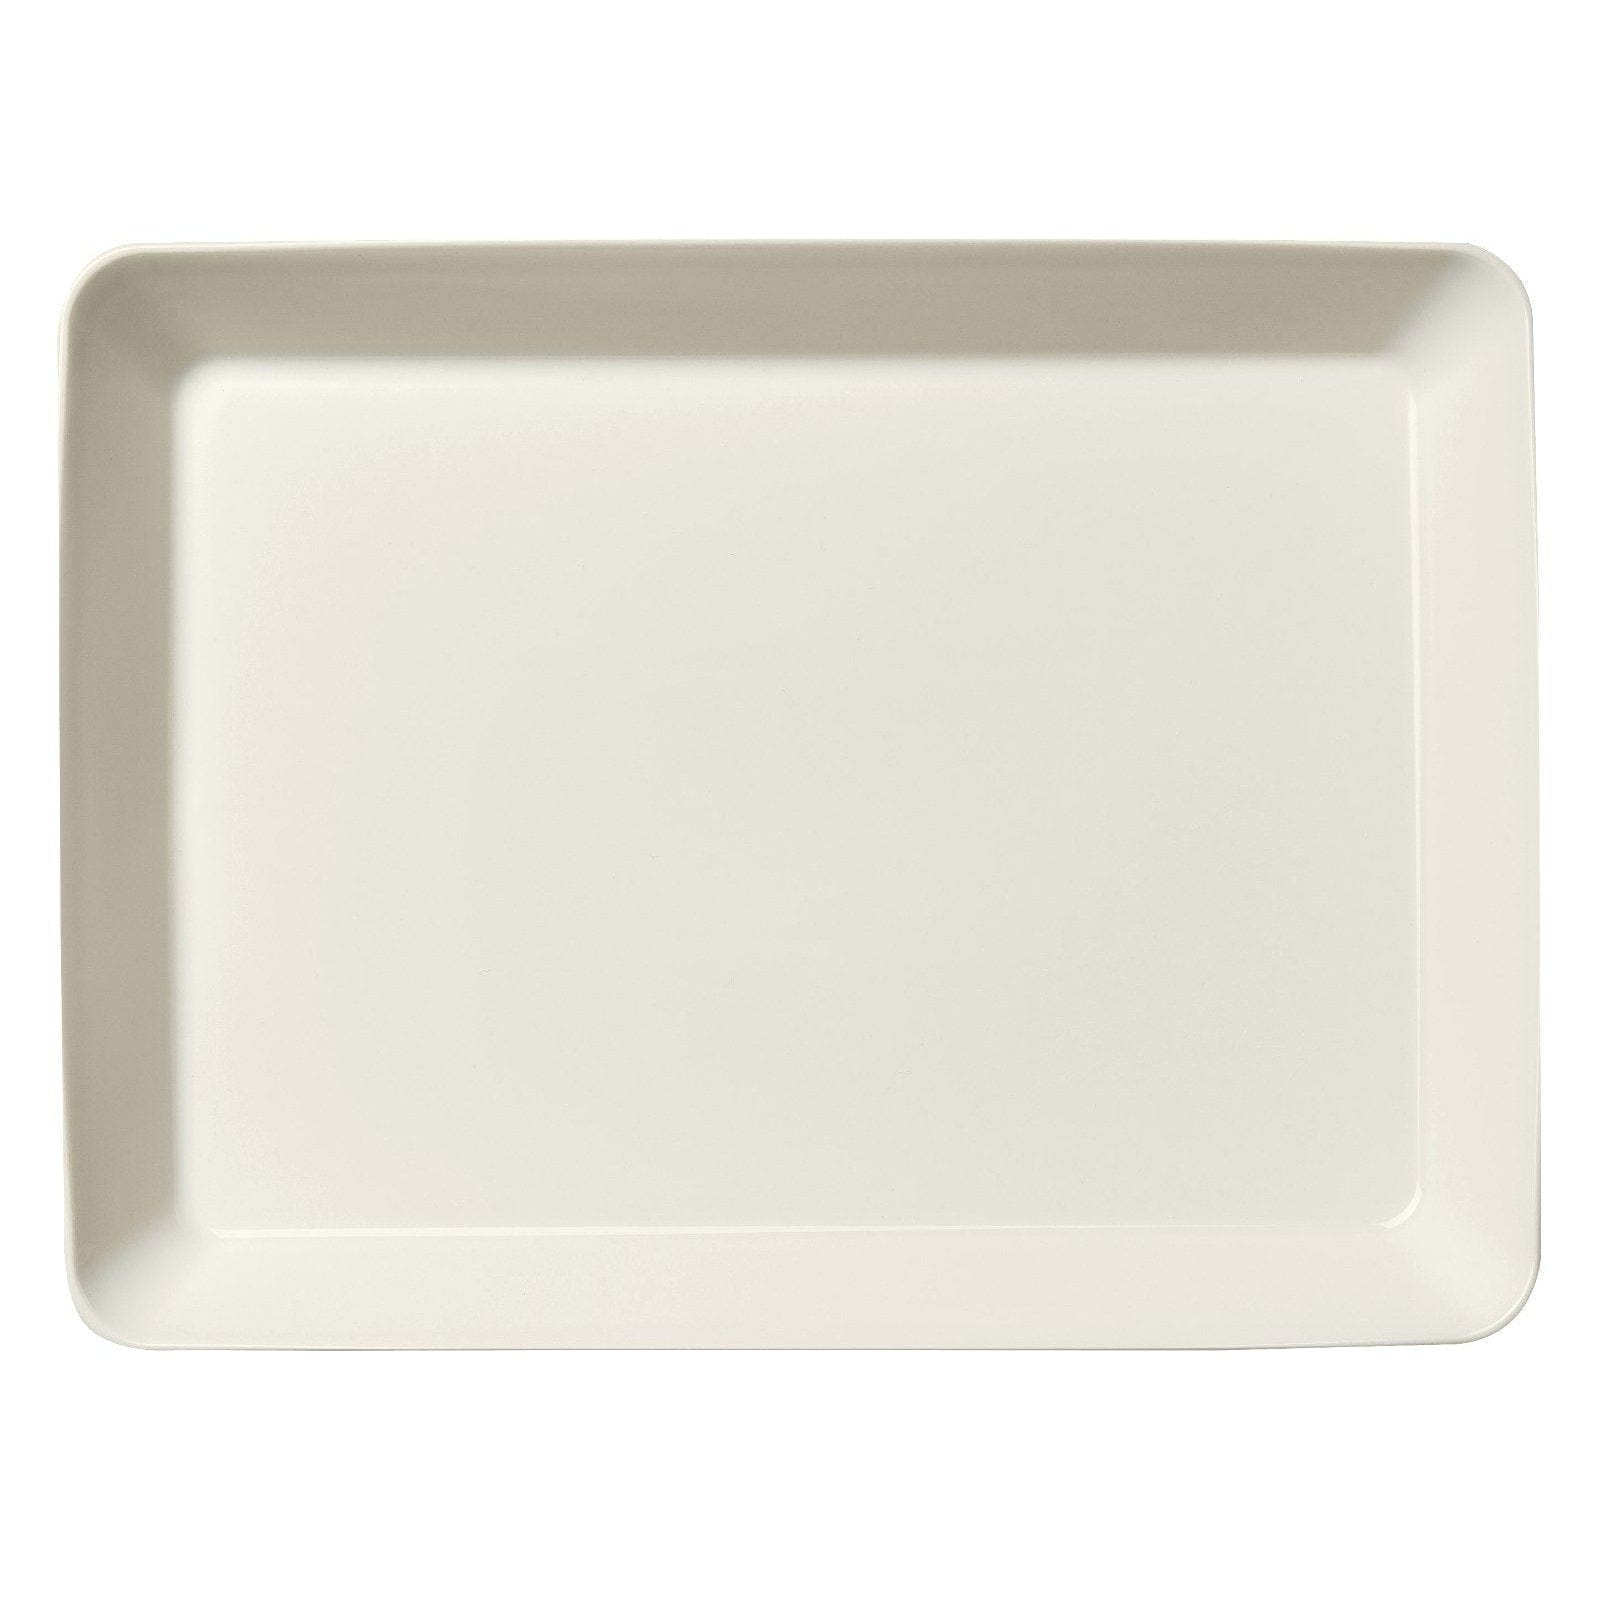 Iittala TEEMA Bowl blanc, 24 x 32 cm